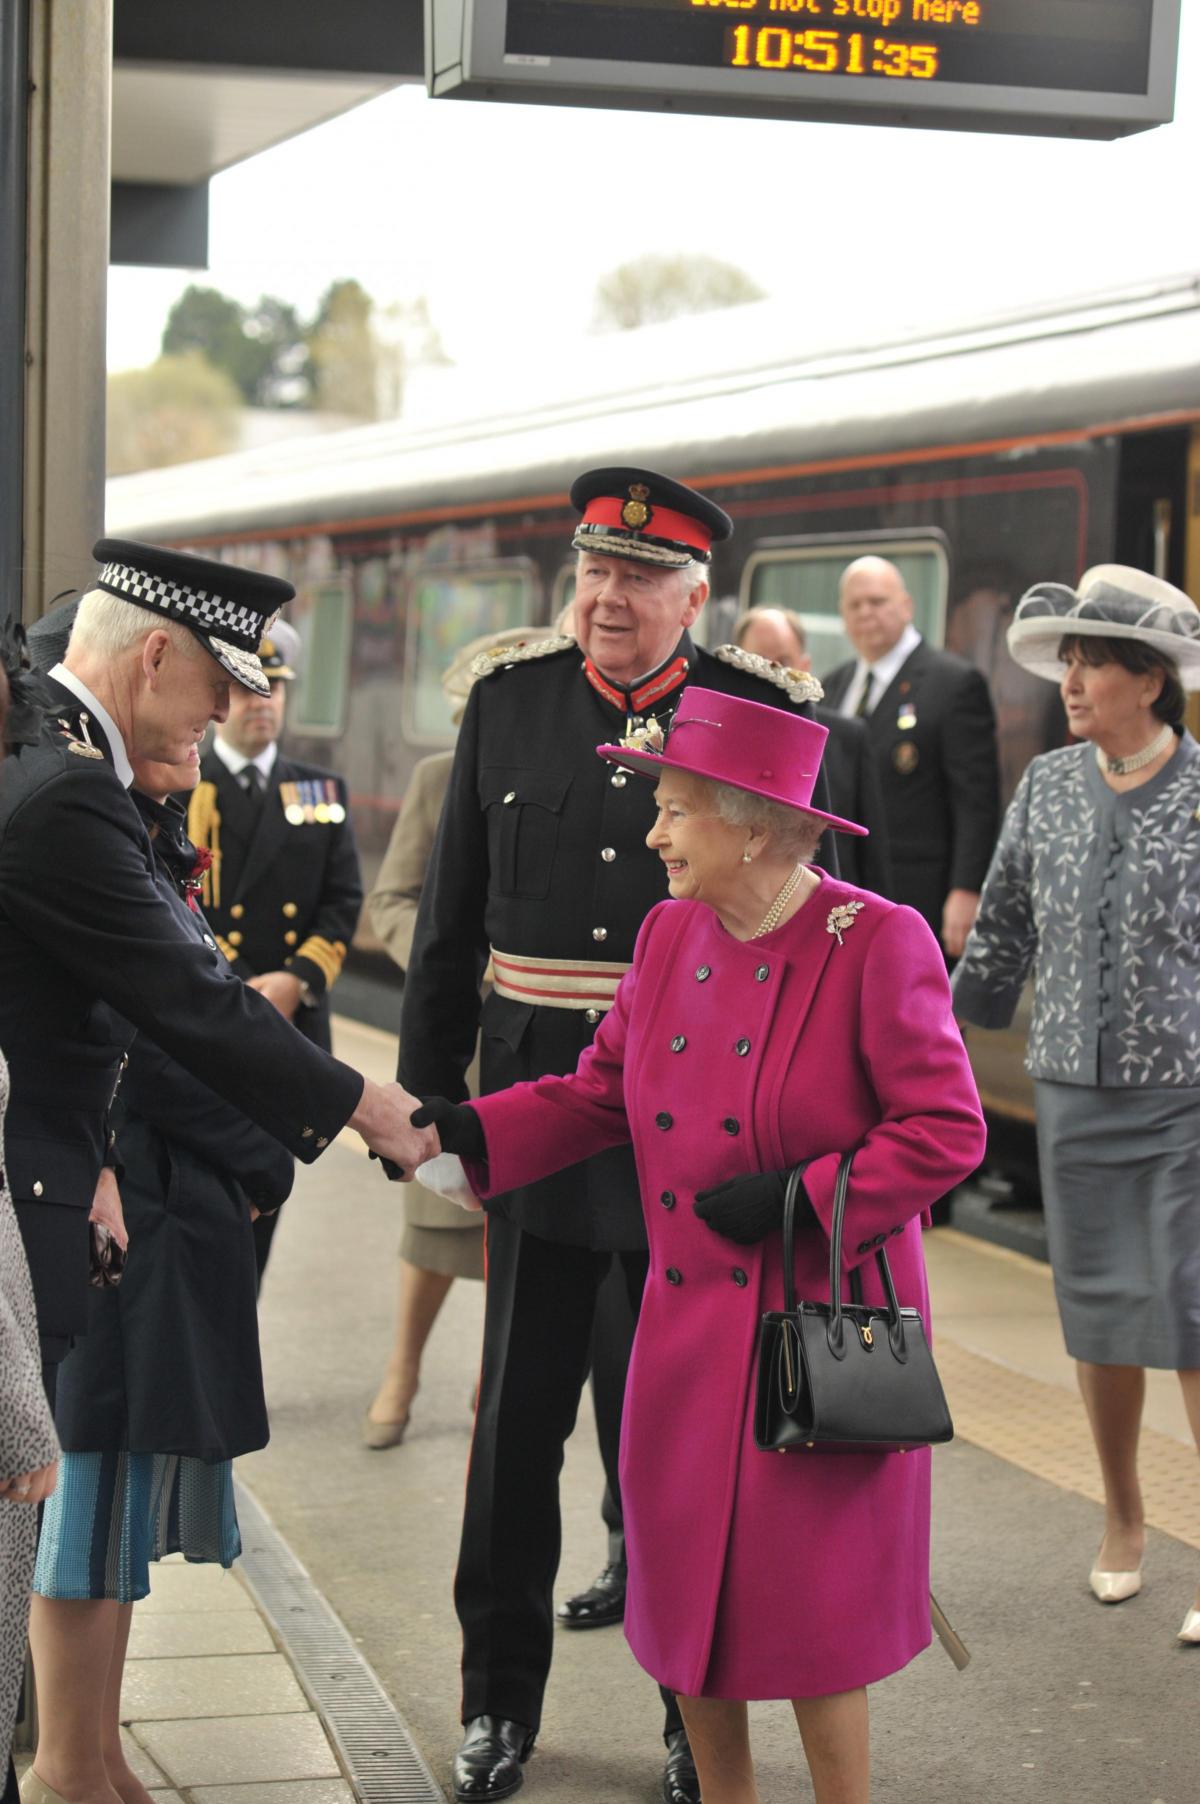 HRH Queen Elizabeth II visits Blackburn Cathedral for Maundy service 17/04/2014